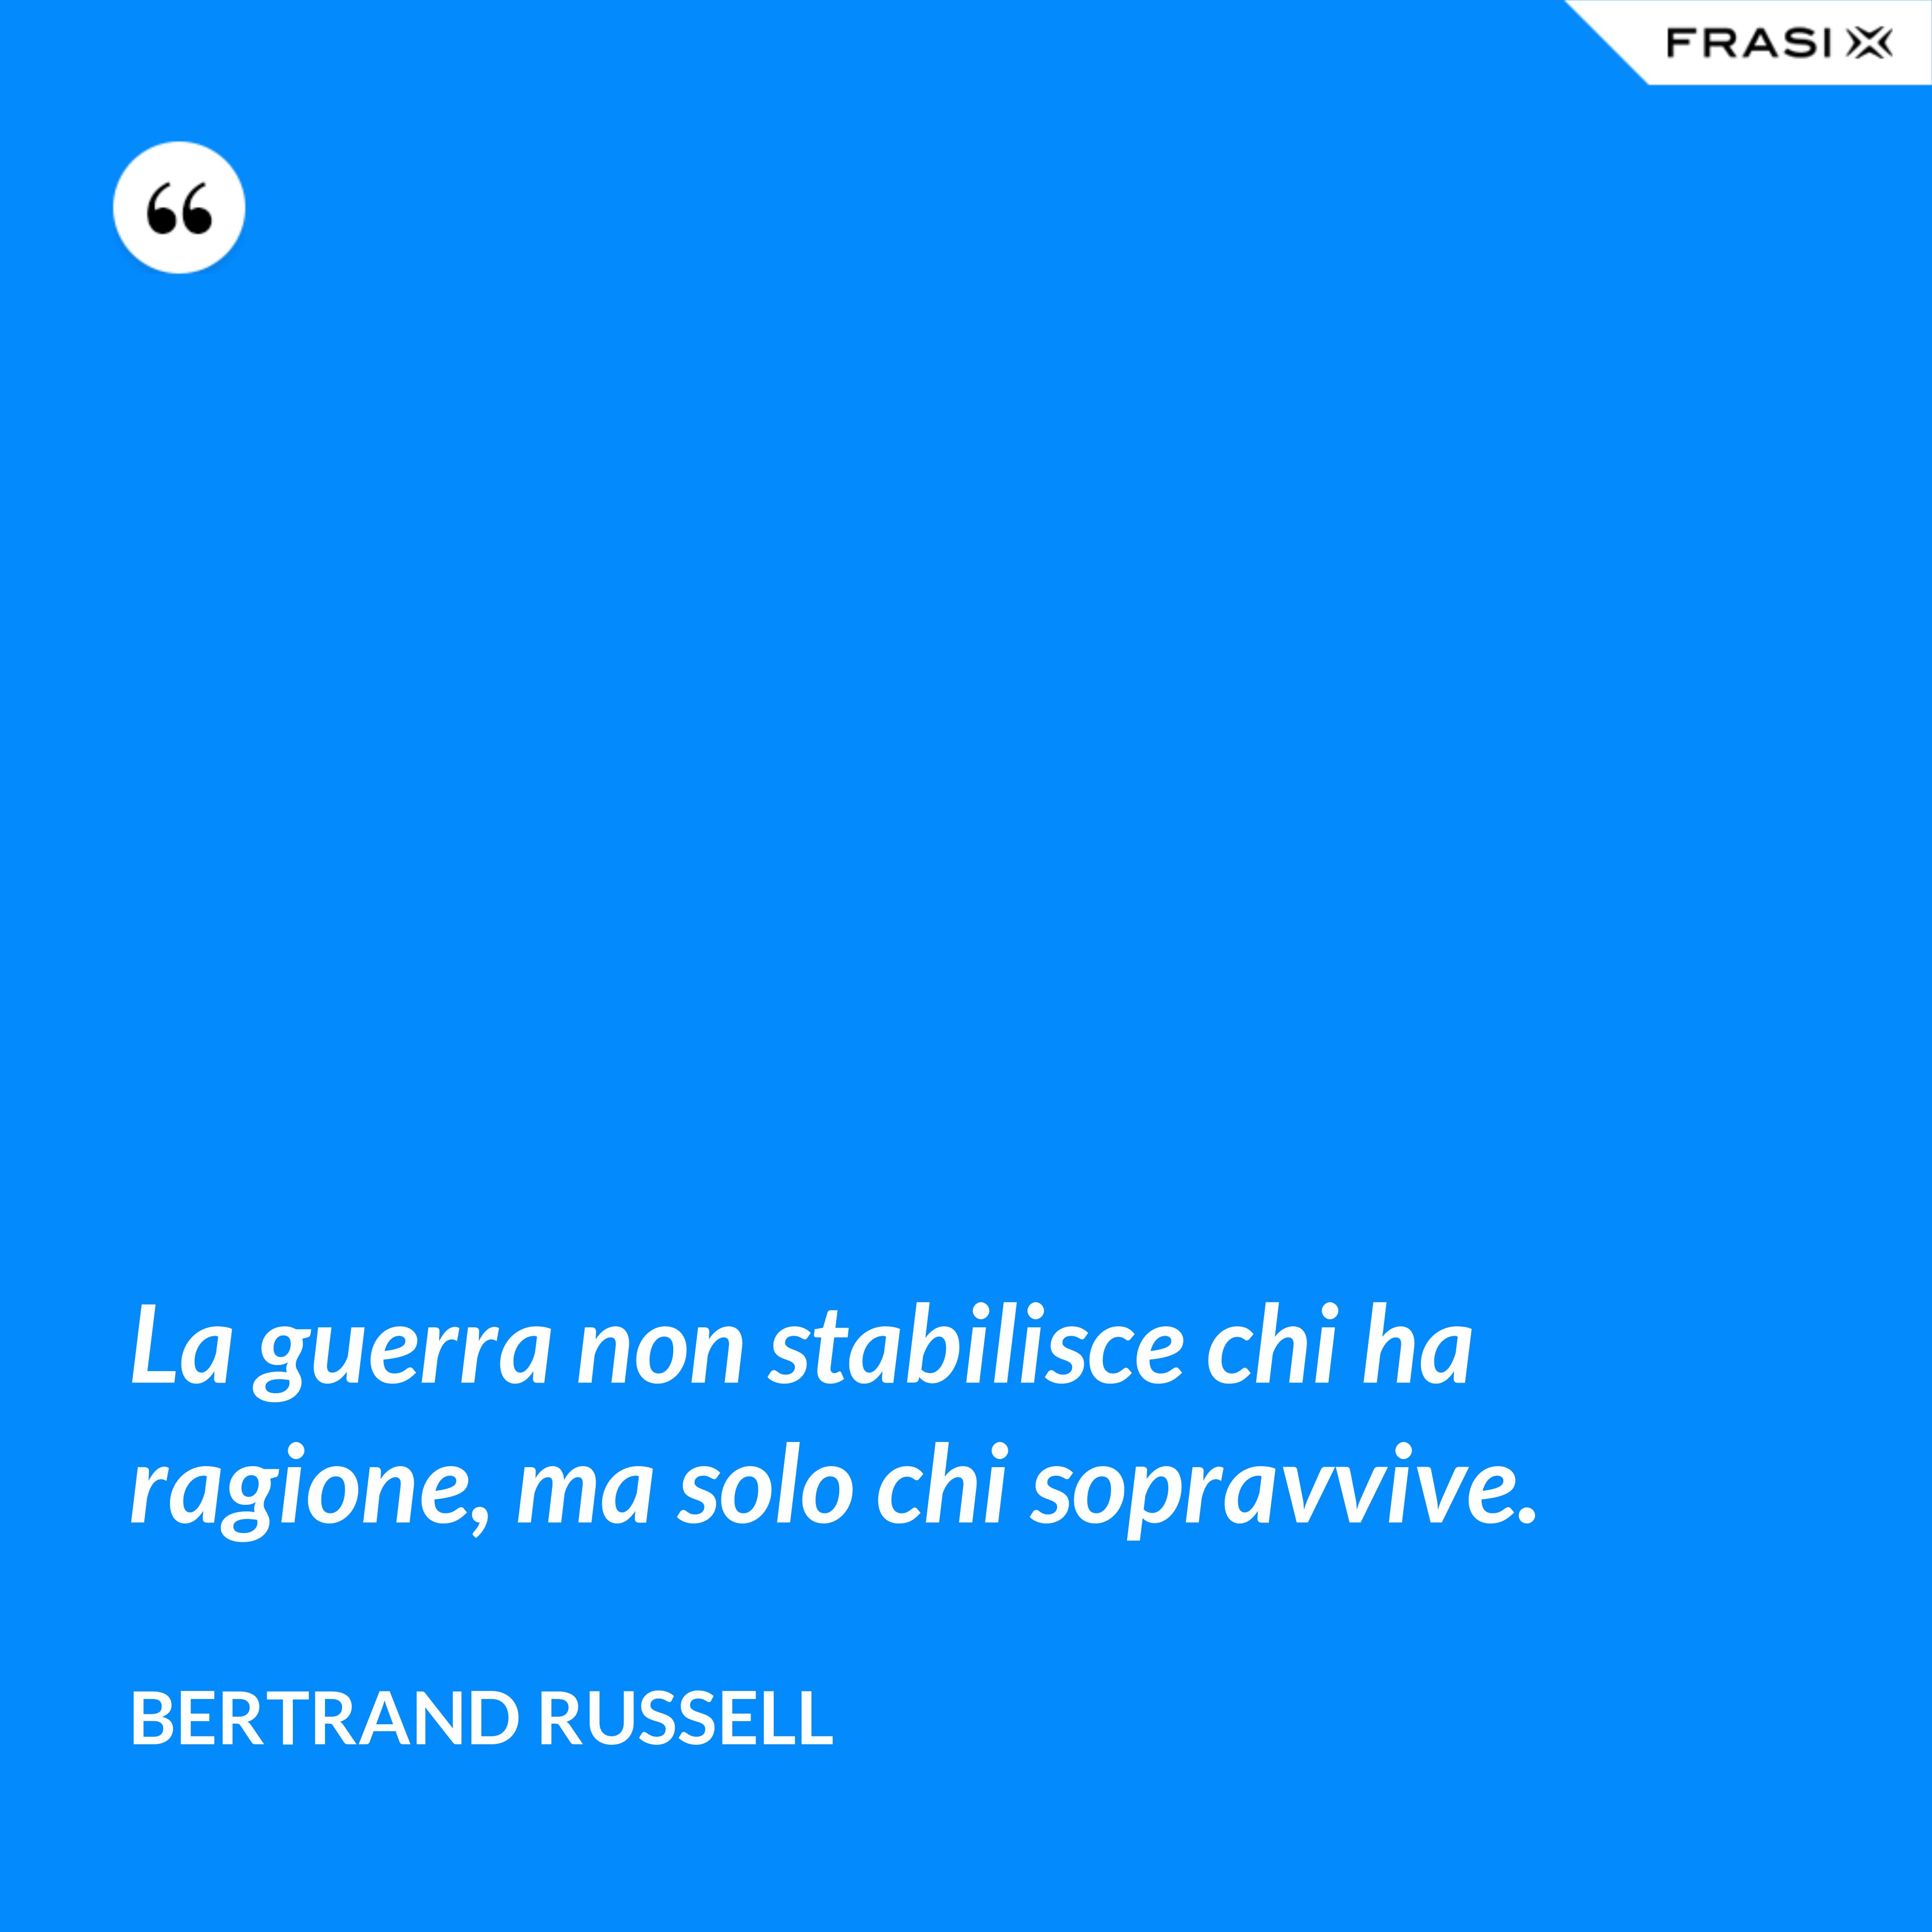 La guerra non stabilisce chi ha ragione, ma solo chi sopravvive. - Bertrand Russell